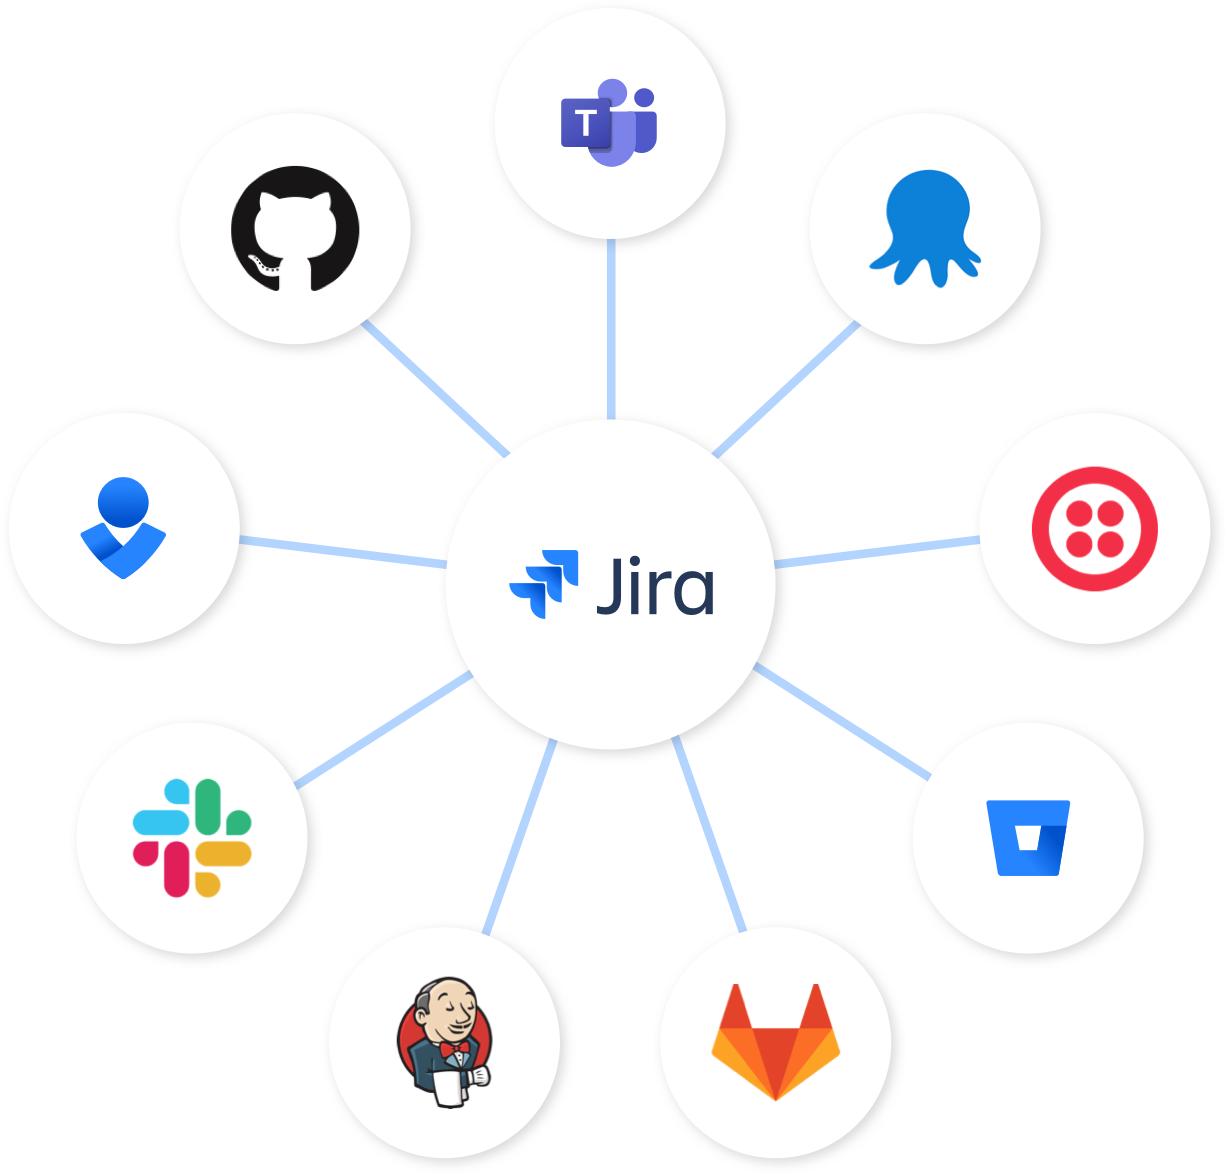 Nœud Jira - Jira au centre avec des connexions à Bitbucket, Slack et Opsgenie